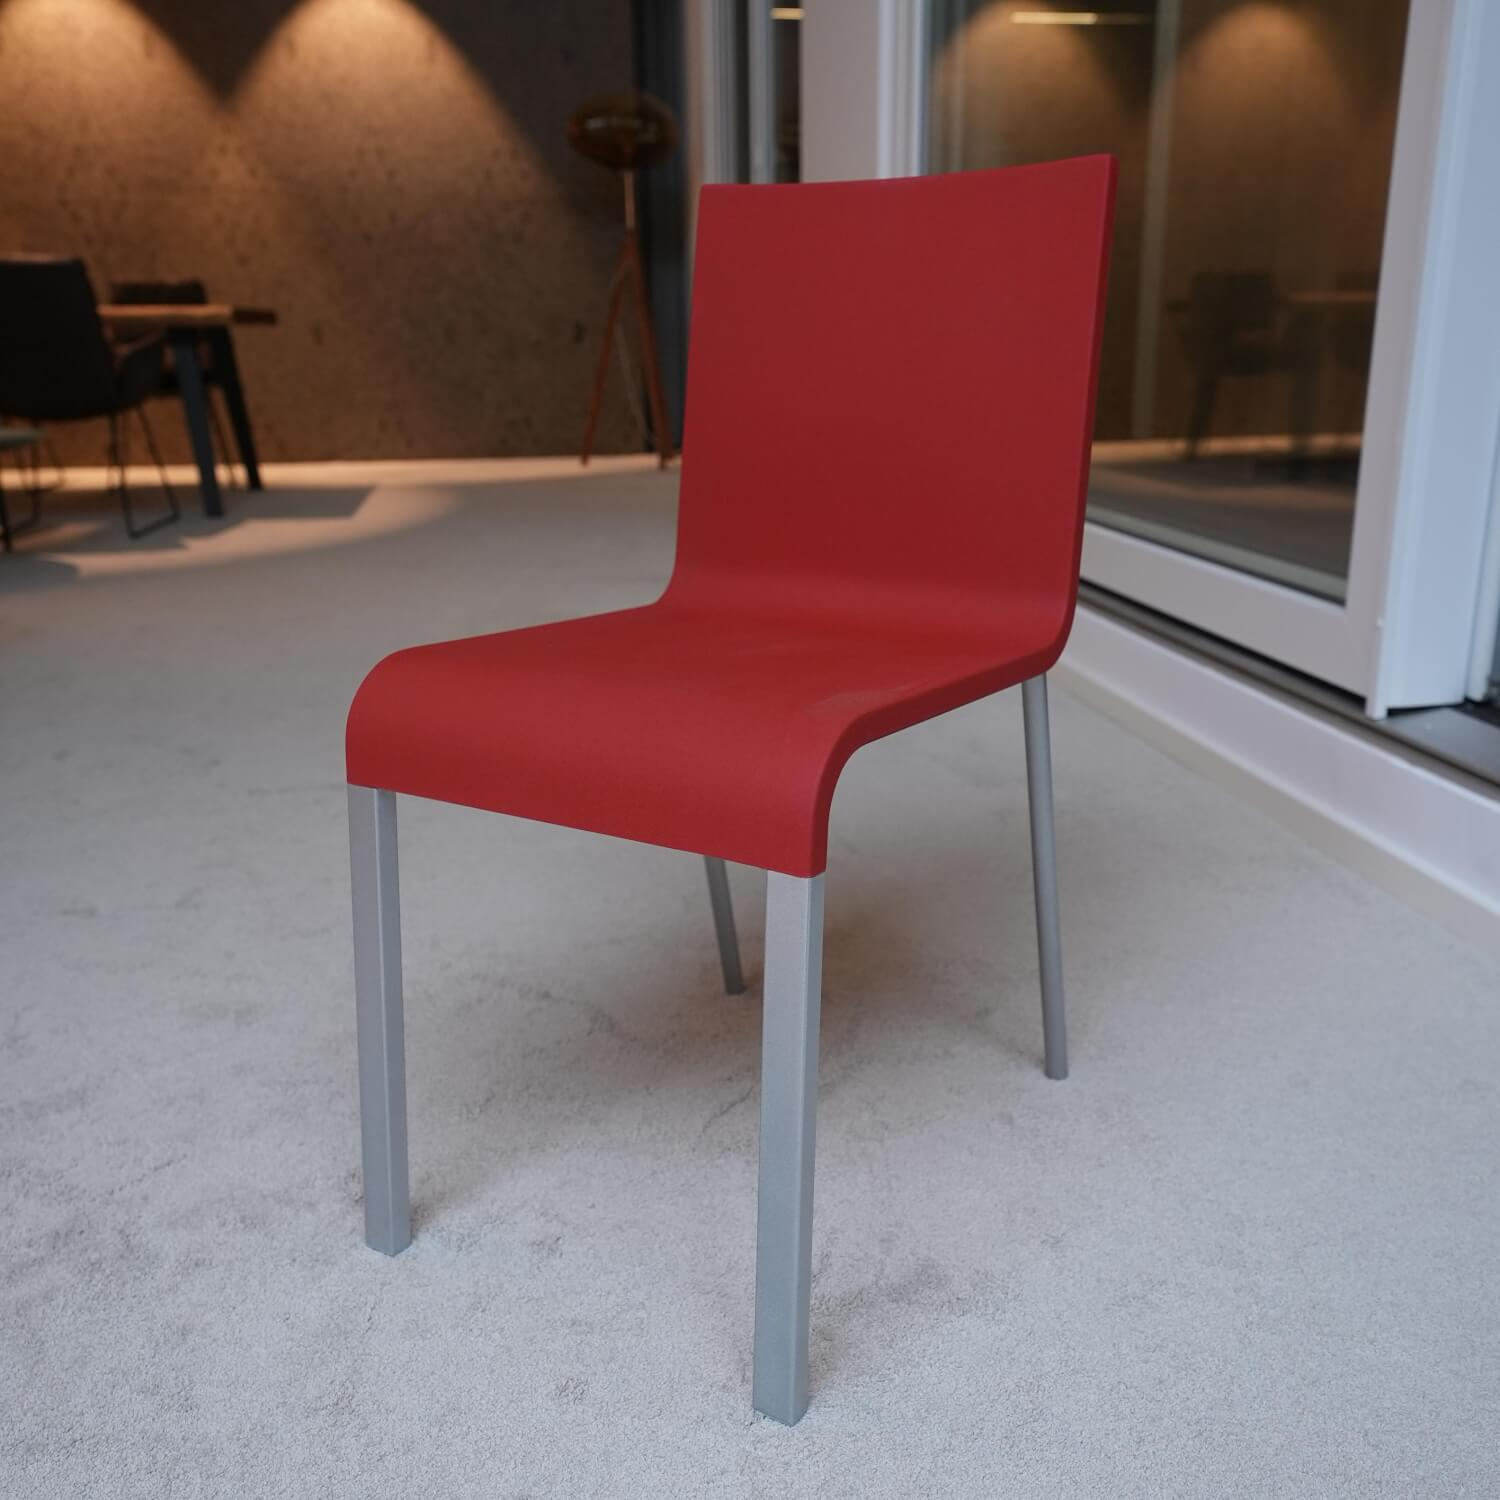 Stuhl 03 Sitzschalenfarbe Signalrot Untergestell Pulverbeschichtet Silber Glatt